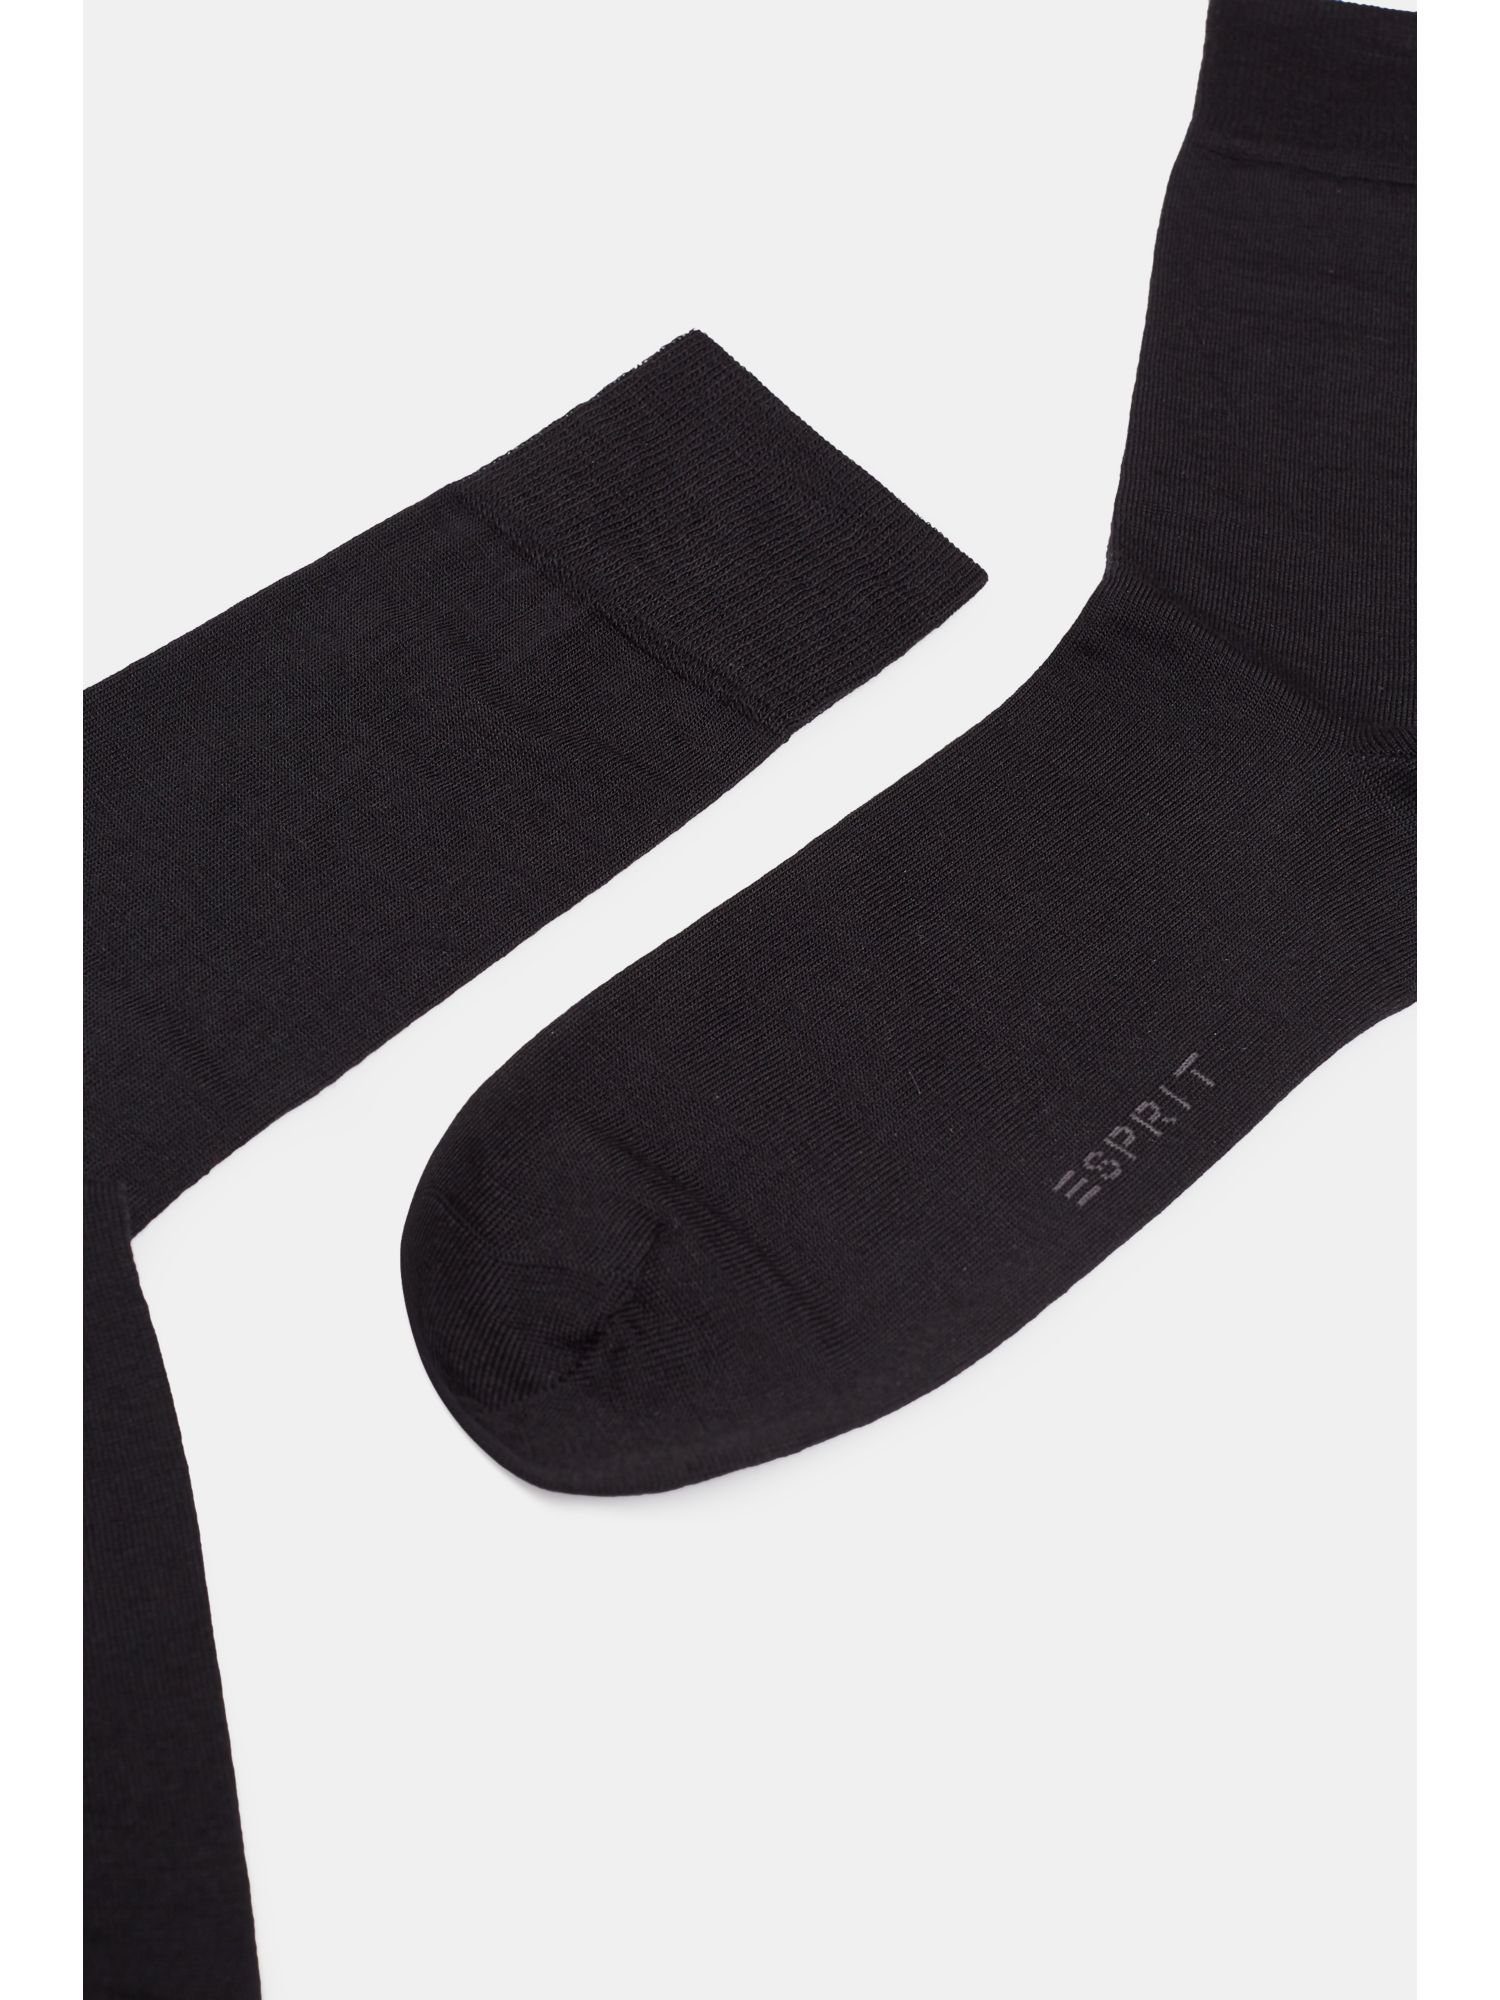 mit Esprit BLACK Feinstrick-Strümpfe 2er-Pack Schurwolle Socken